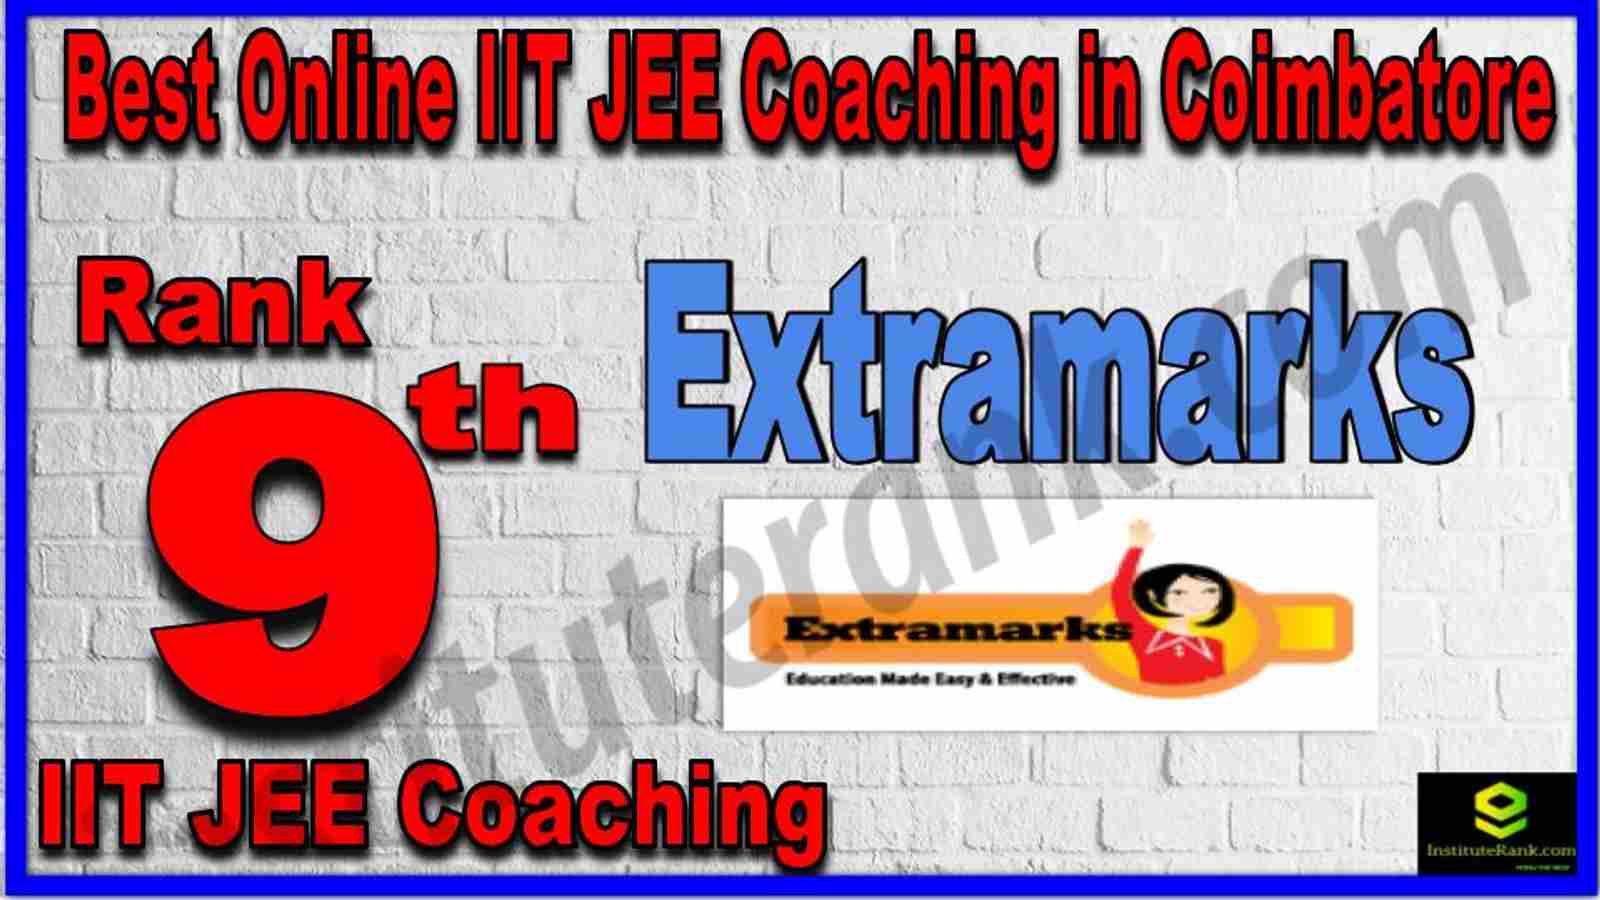 Rank 9th Best Online IIT JEE Coaching in Coimbatore